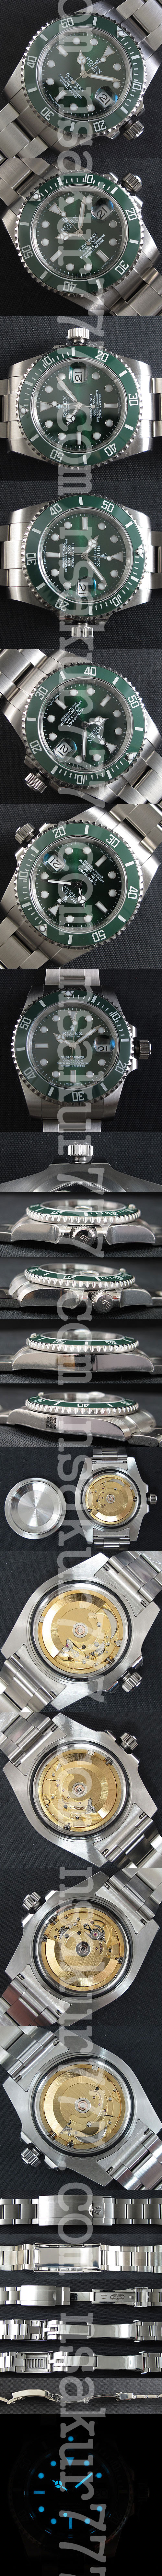 ロレックス サブマリーナー Ref.116610LV 紳士腕時計 【品質2年無料保証】